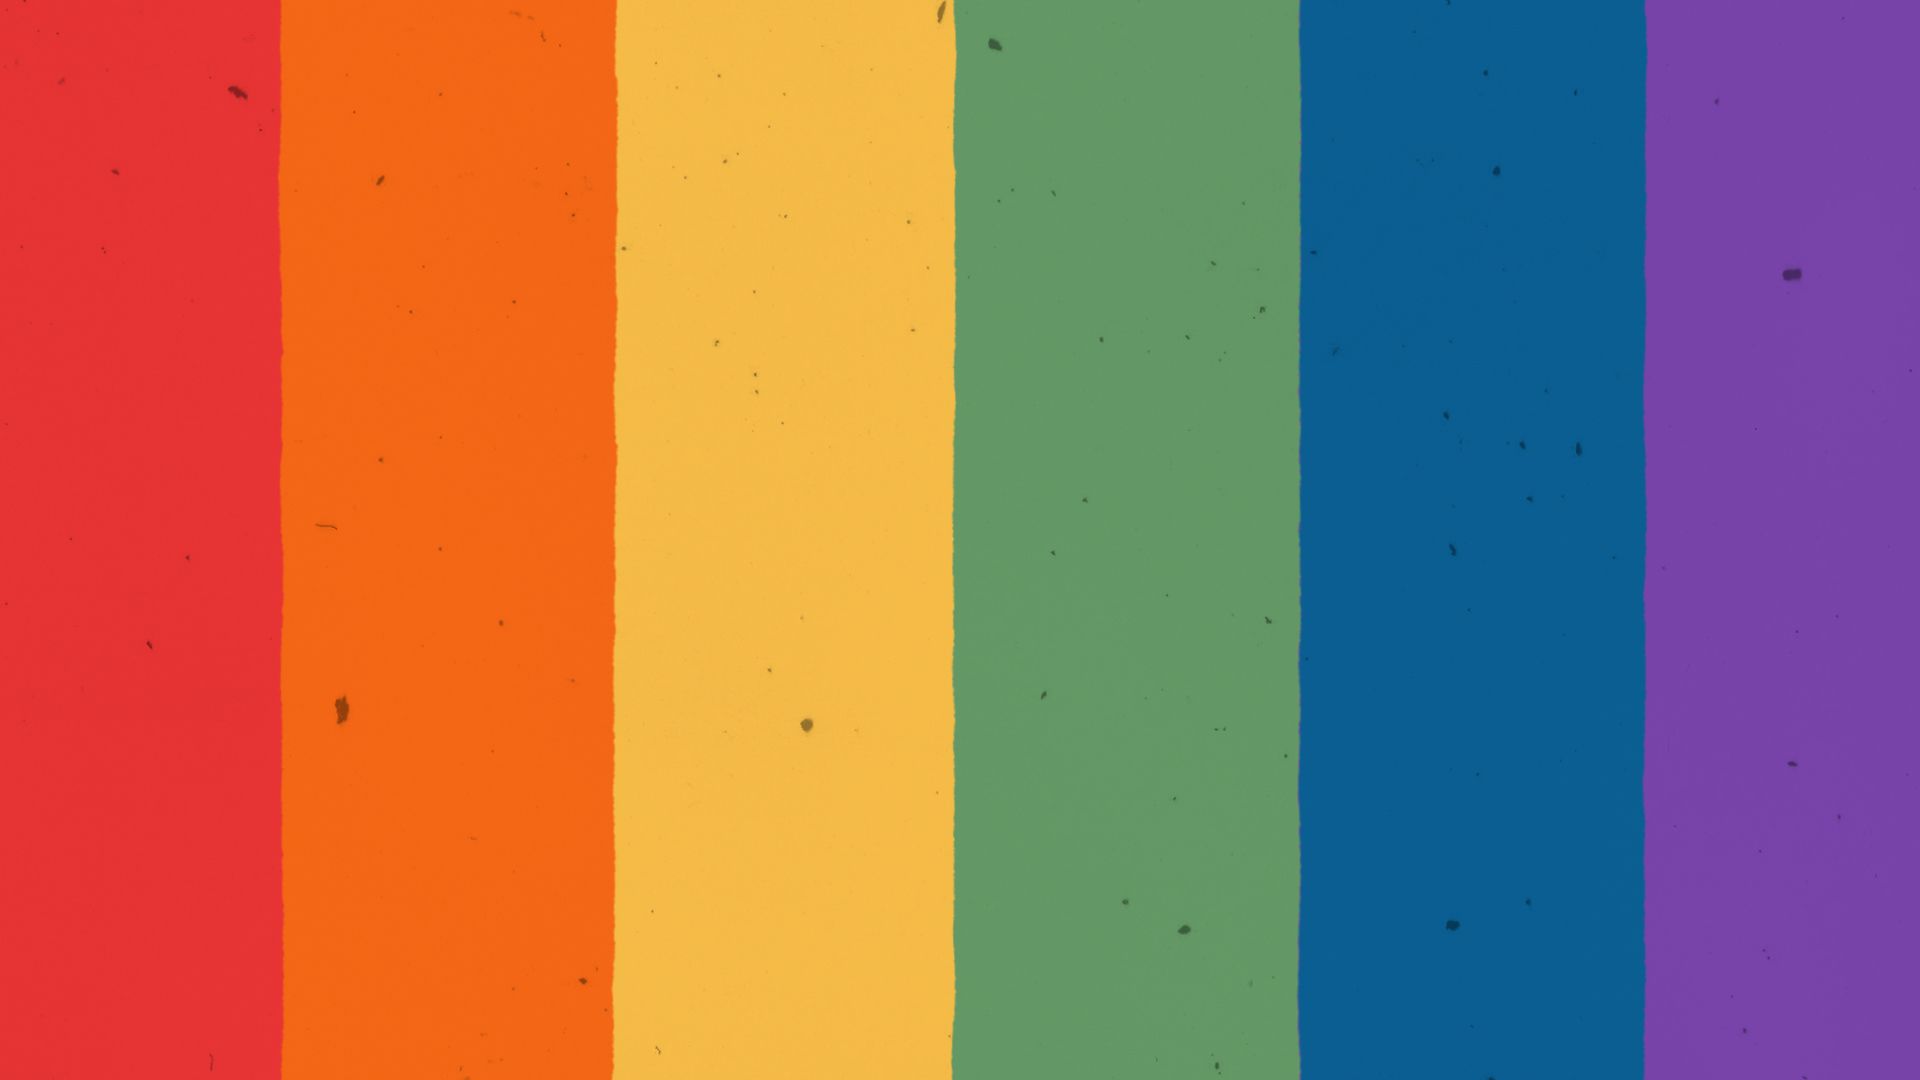 What each LGBTQ Pride flag means